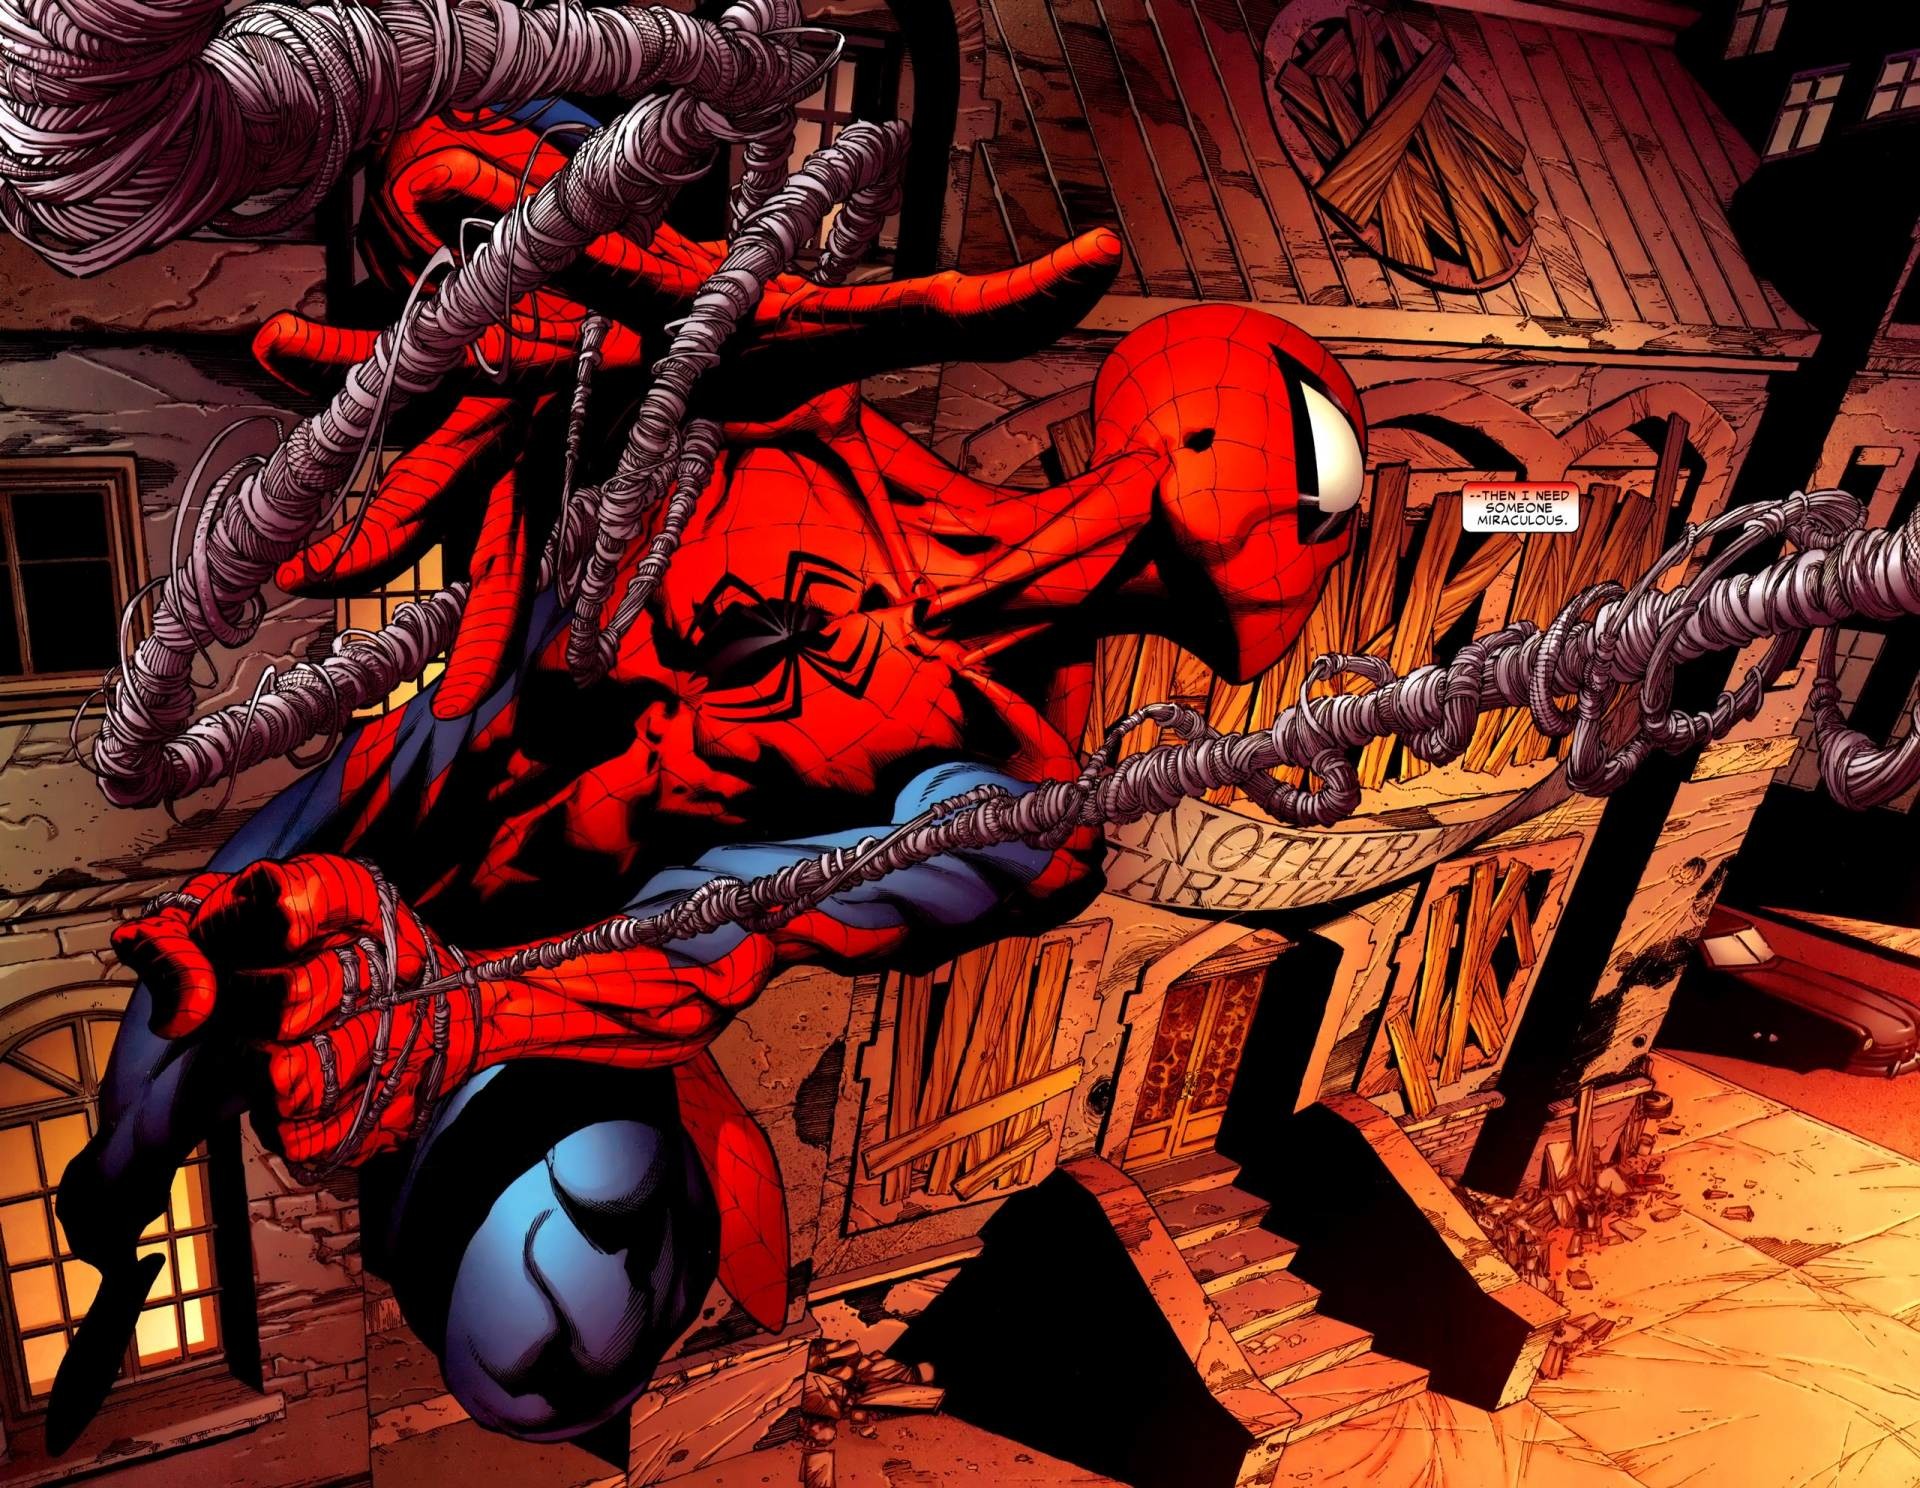 1920x1080 1920x1080 wallpaper spider man amazing fantasy marvel comics download